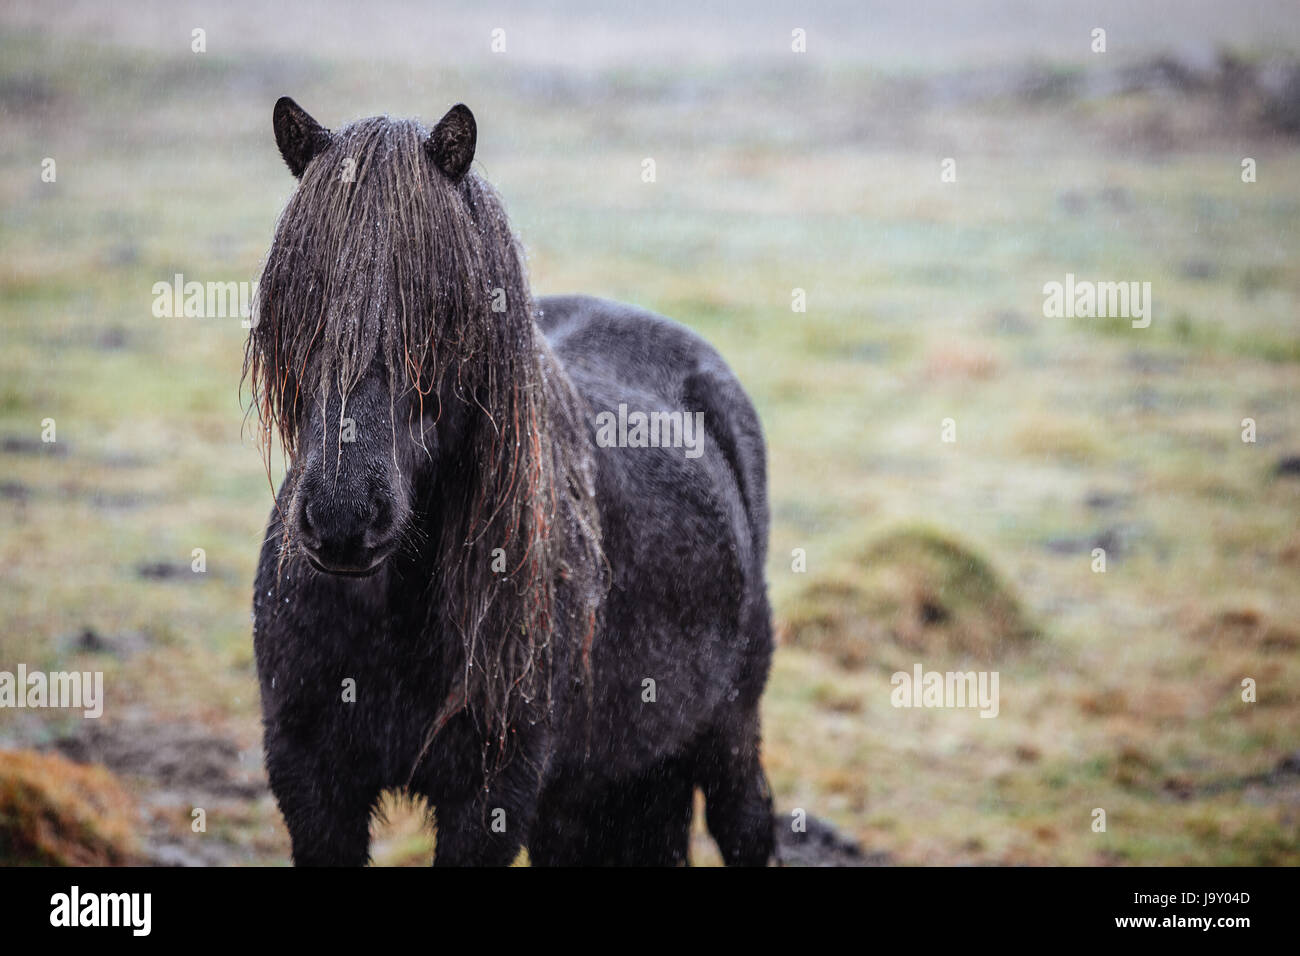 Dark Icelandic horse standing in the rain. Stock Photo